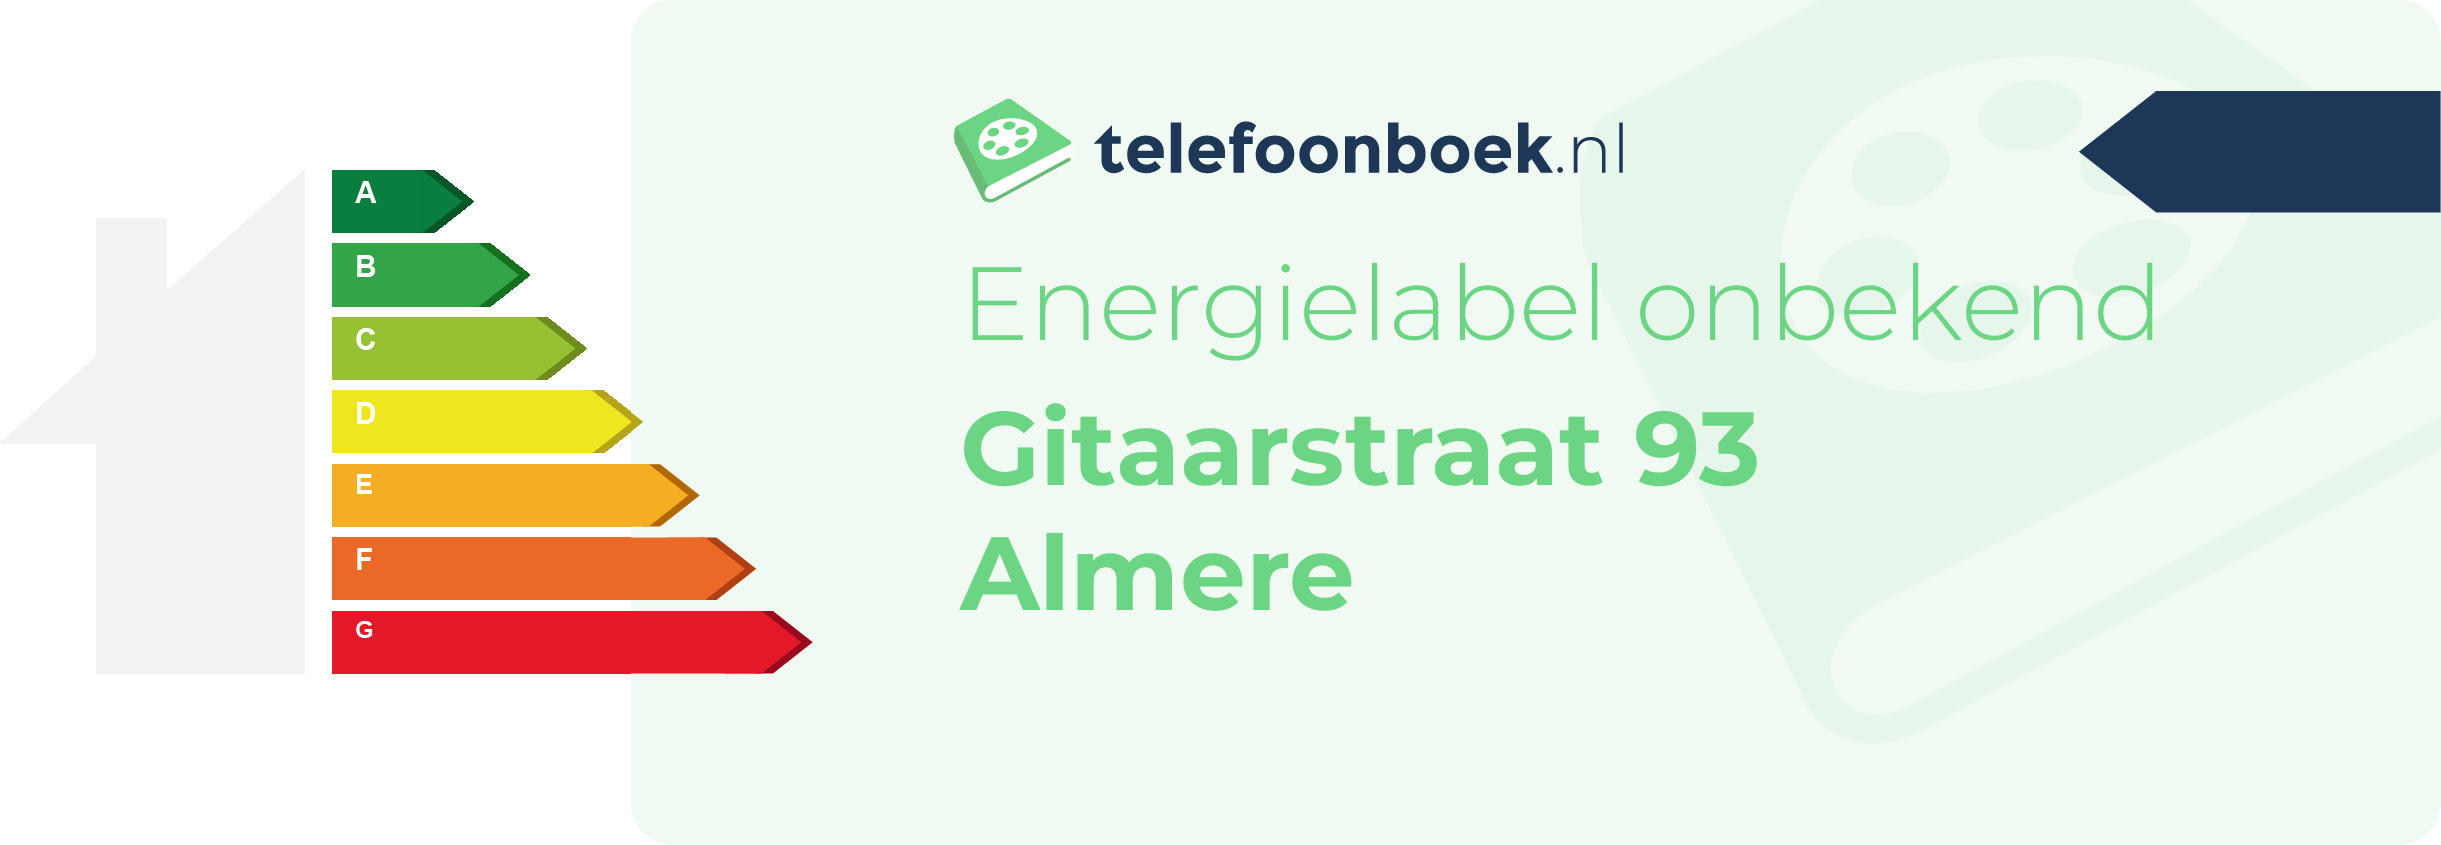 Energielabel Gitaarstraat 93 Almere